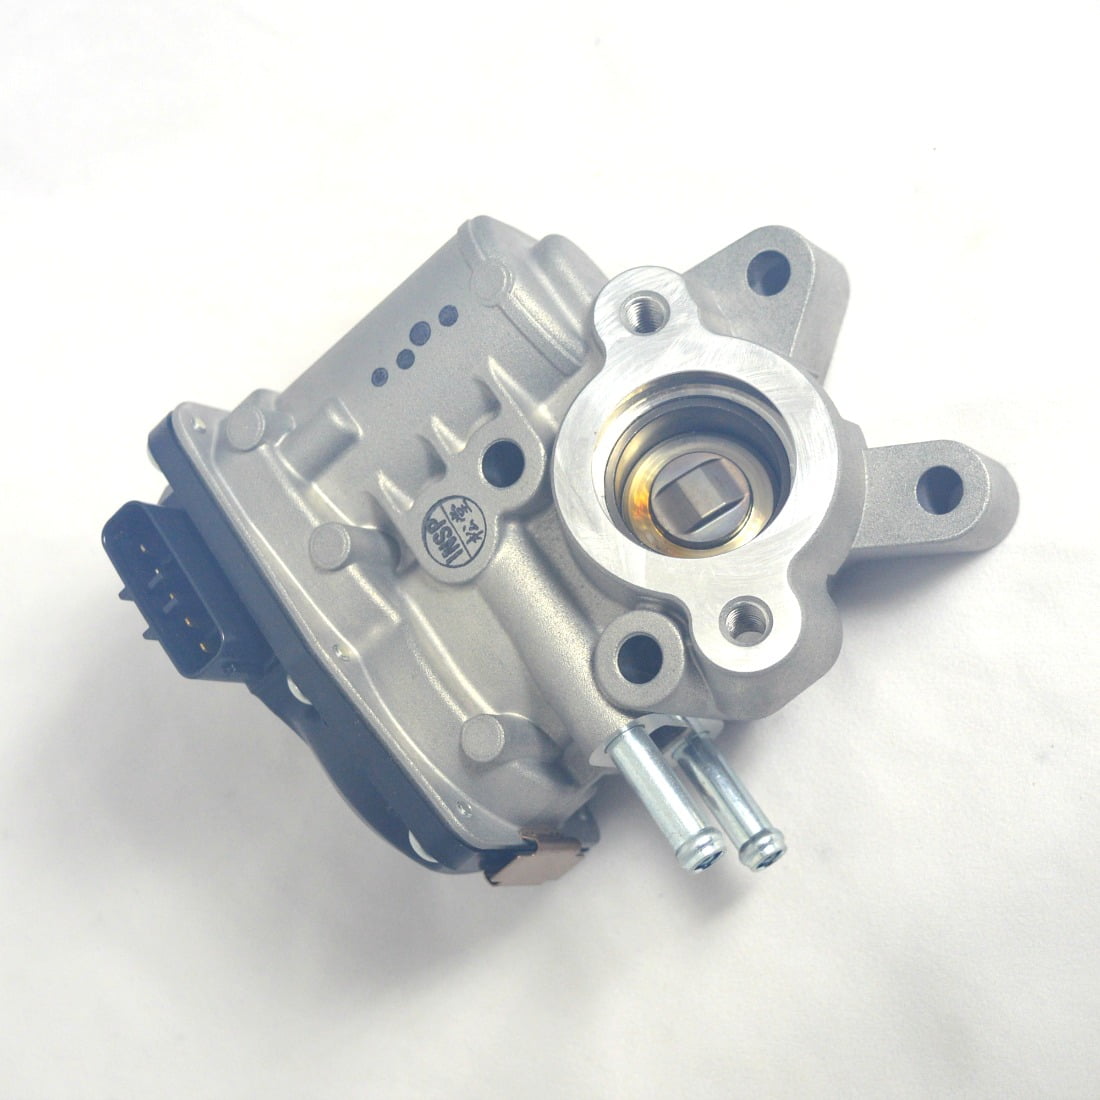 Nissan-navara-pathfinder-egr-valve